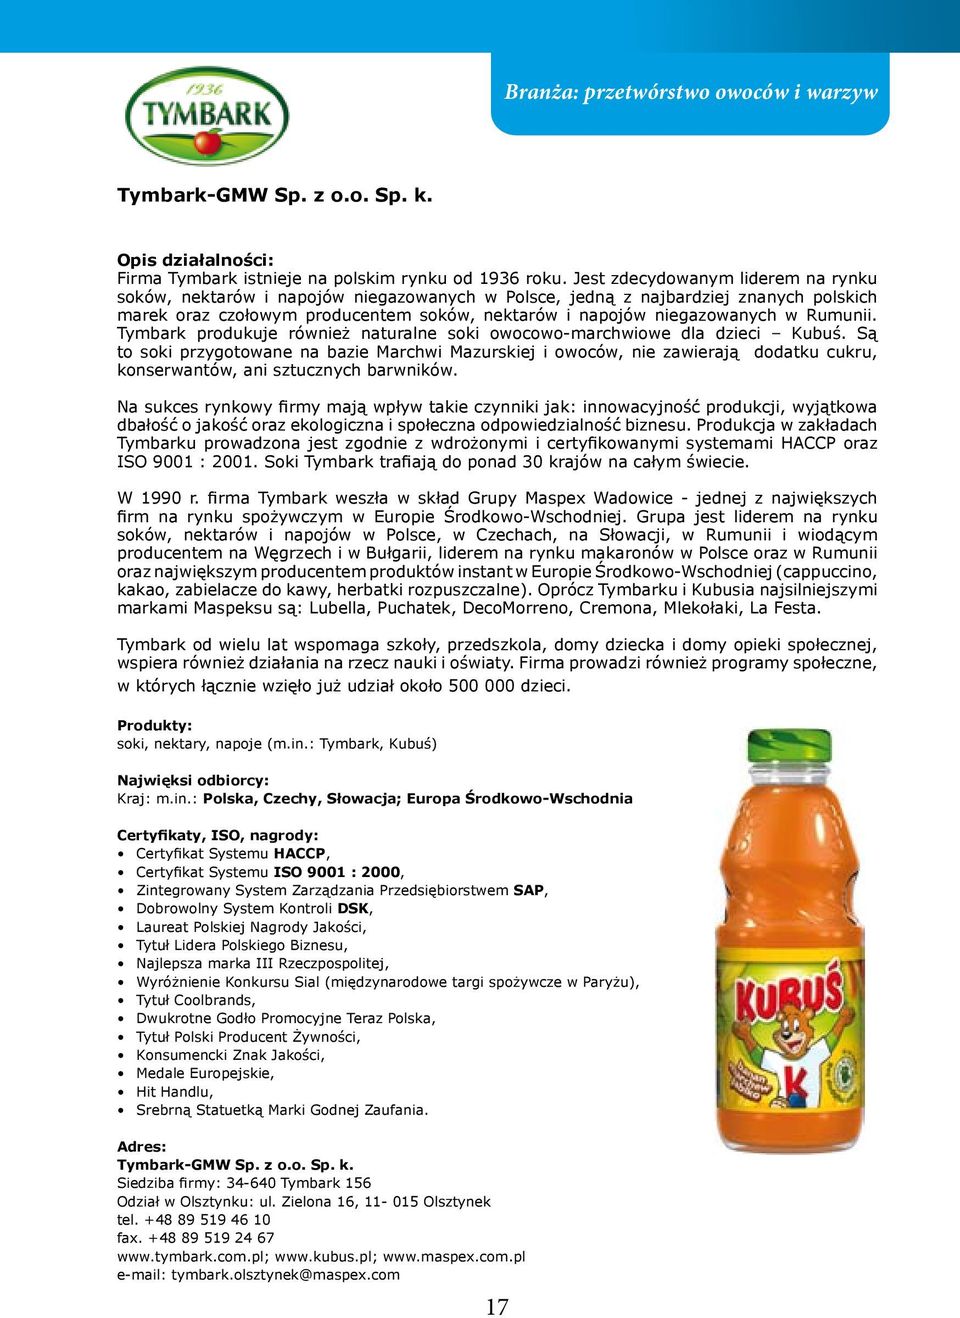 Rumunii. Tymbark produkuje również naturalne soki owocowo-marchwiowe dla dzieci Kubuś.